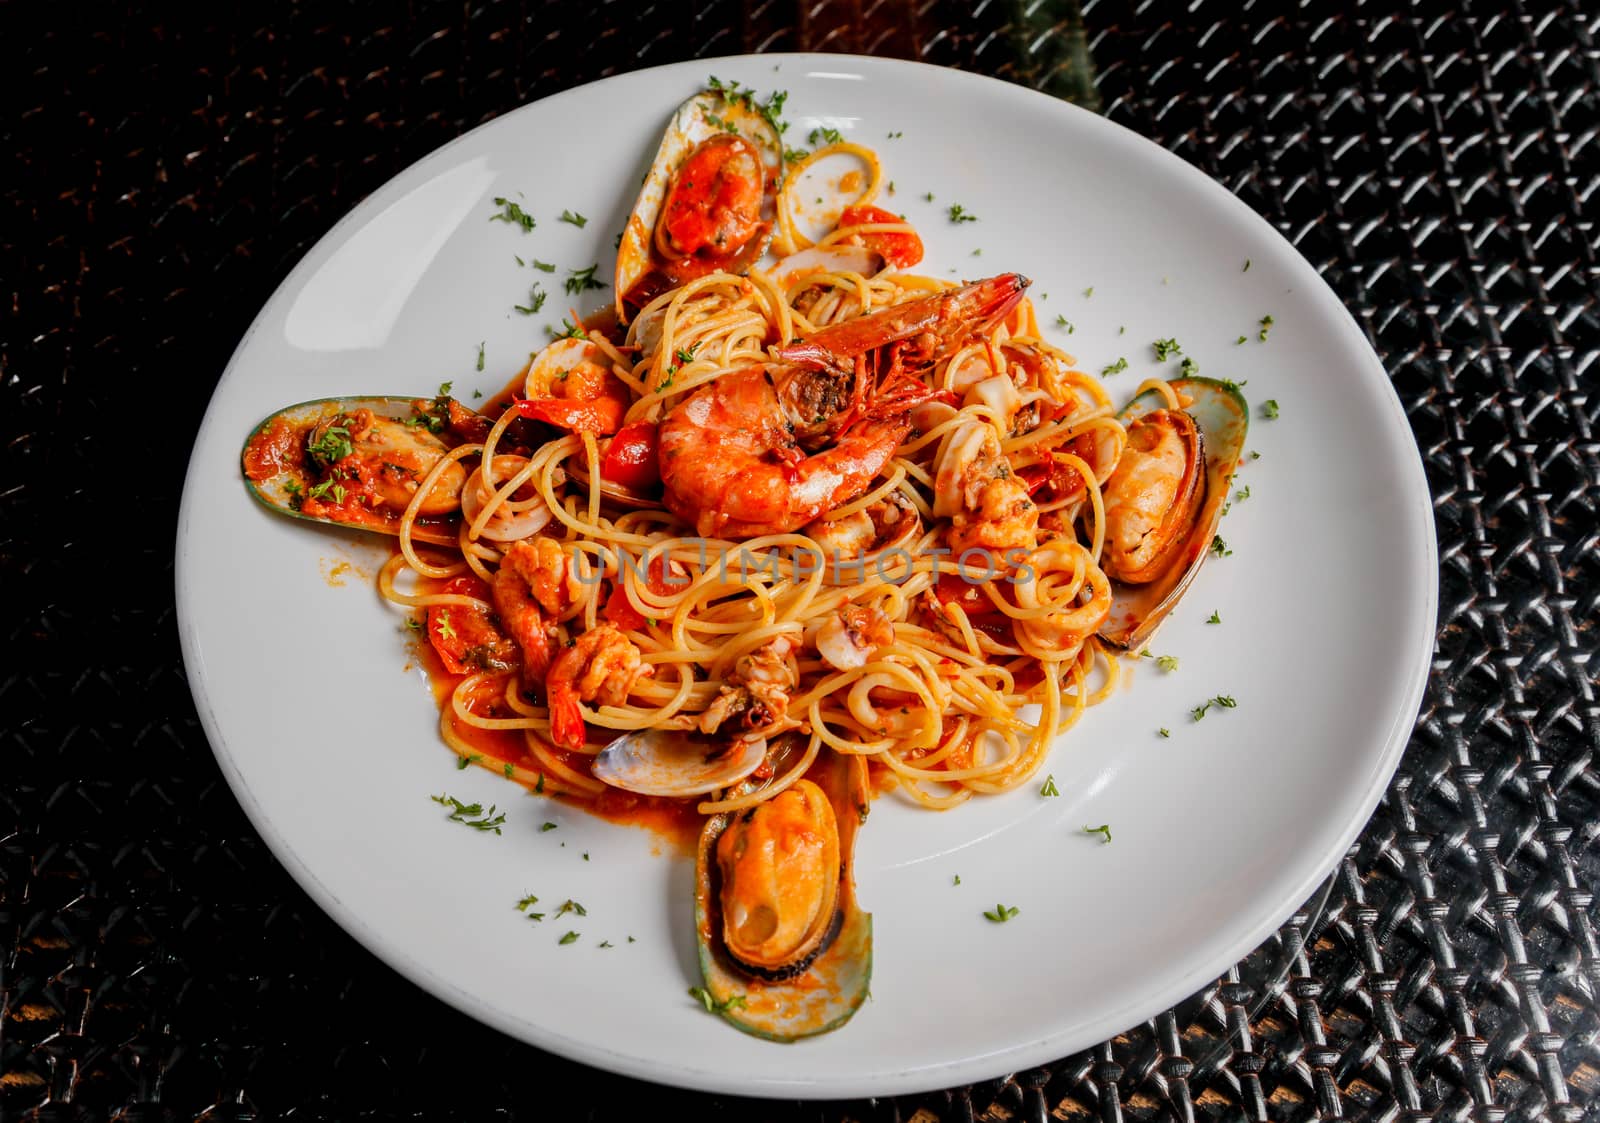 Italian cuisine spaghetti and seafood.